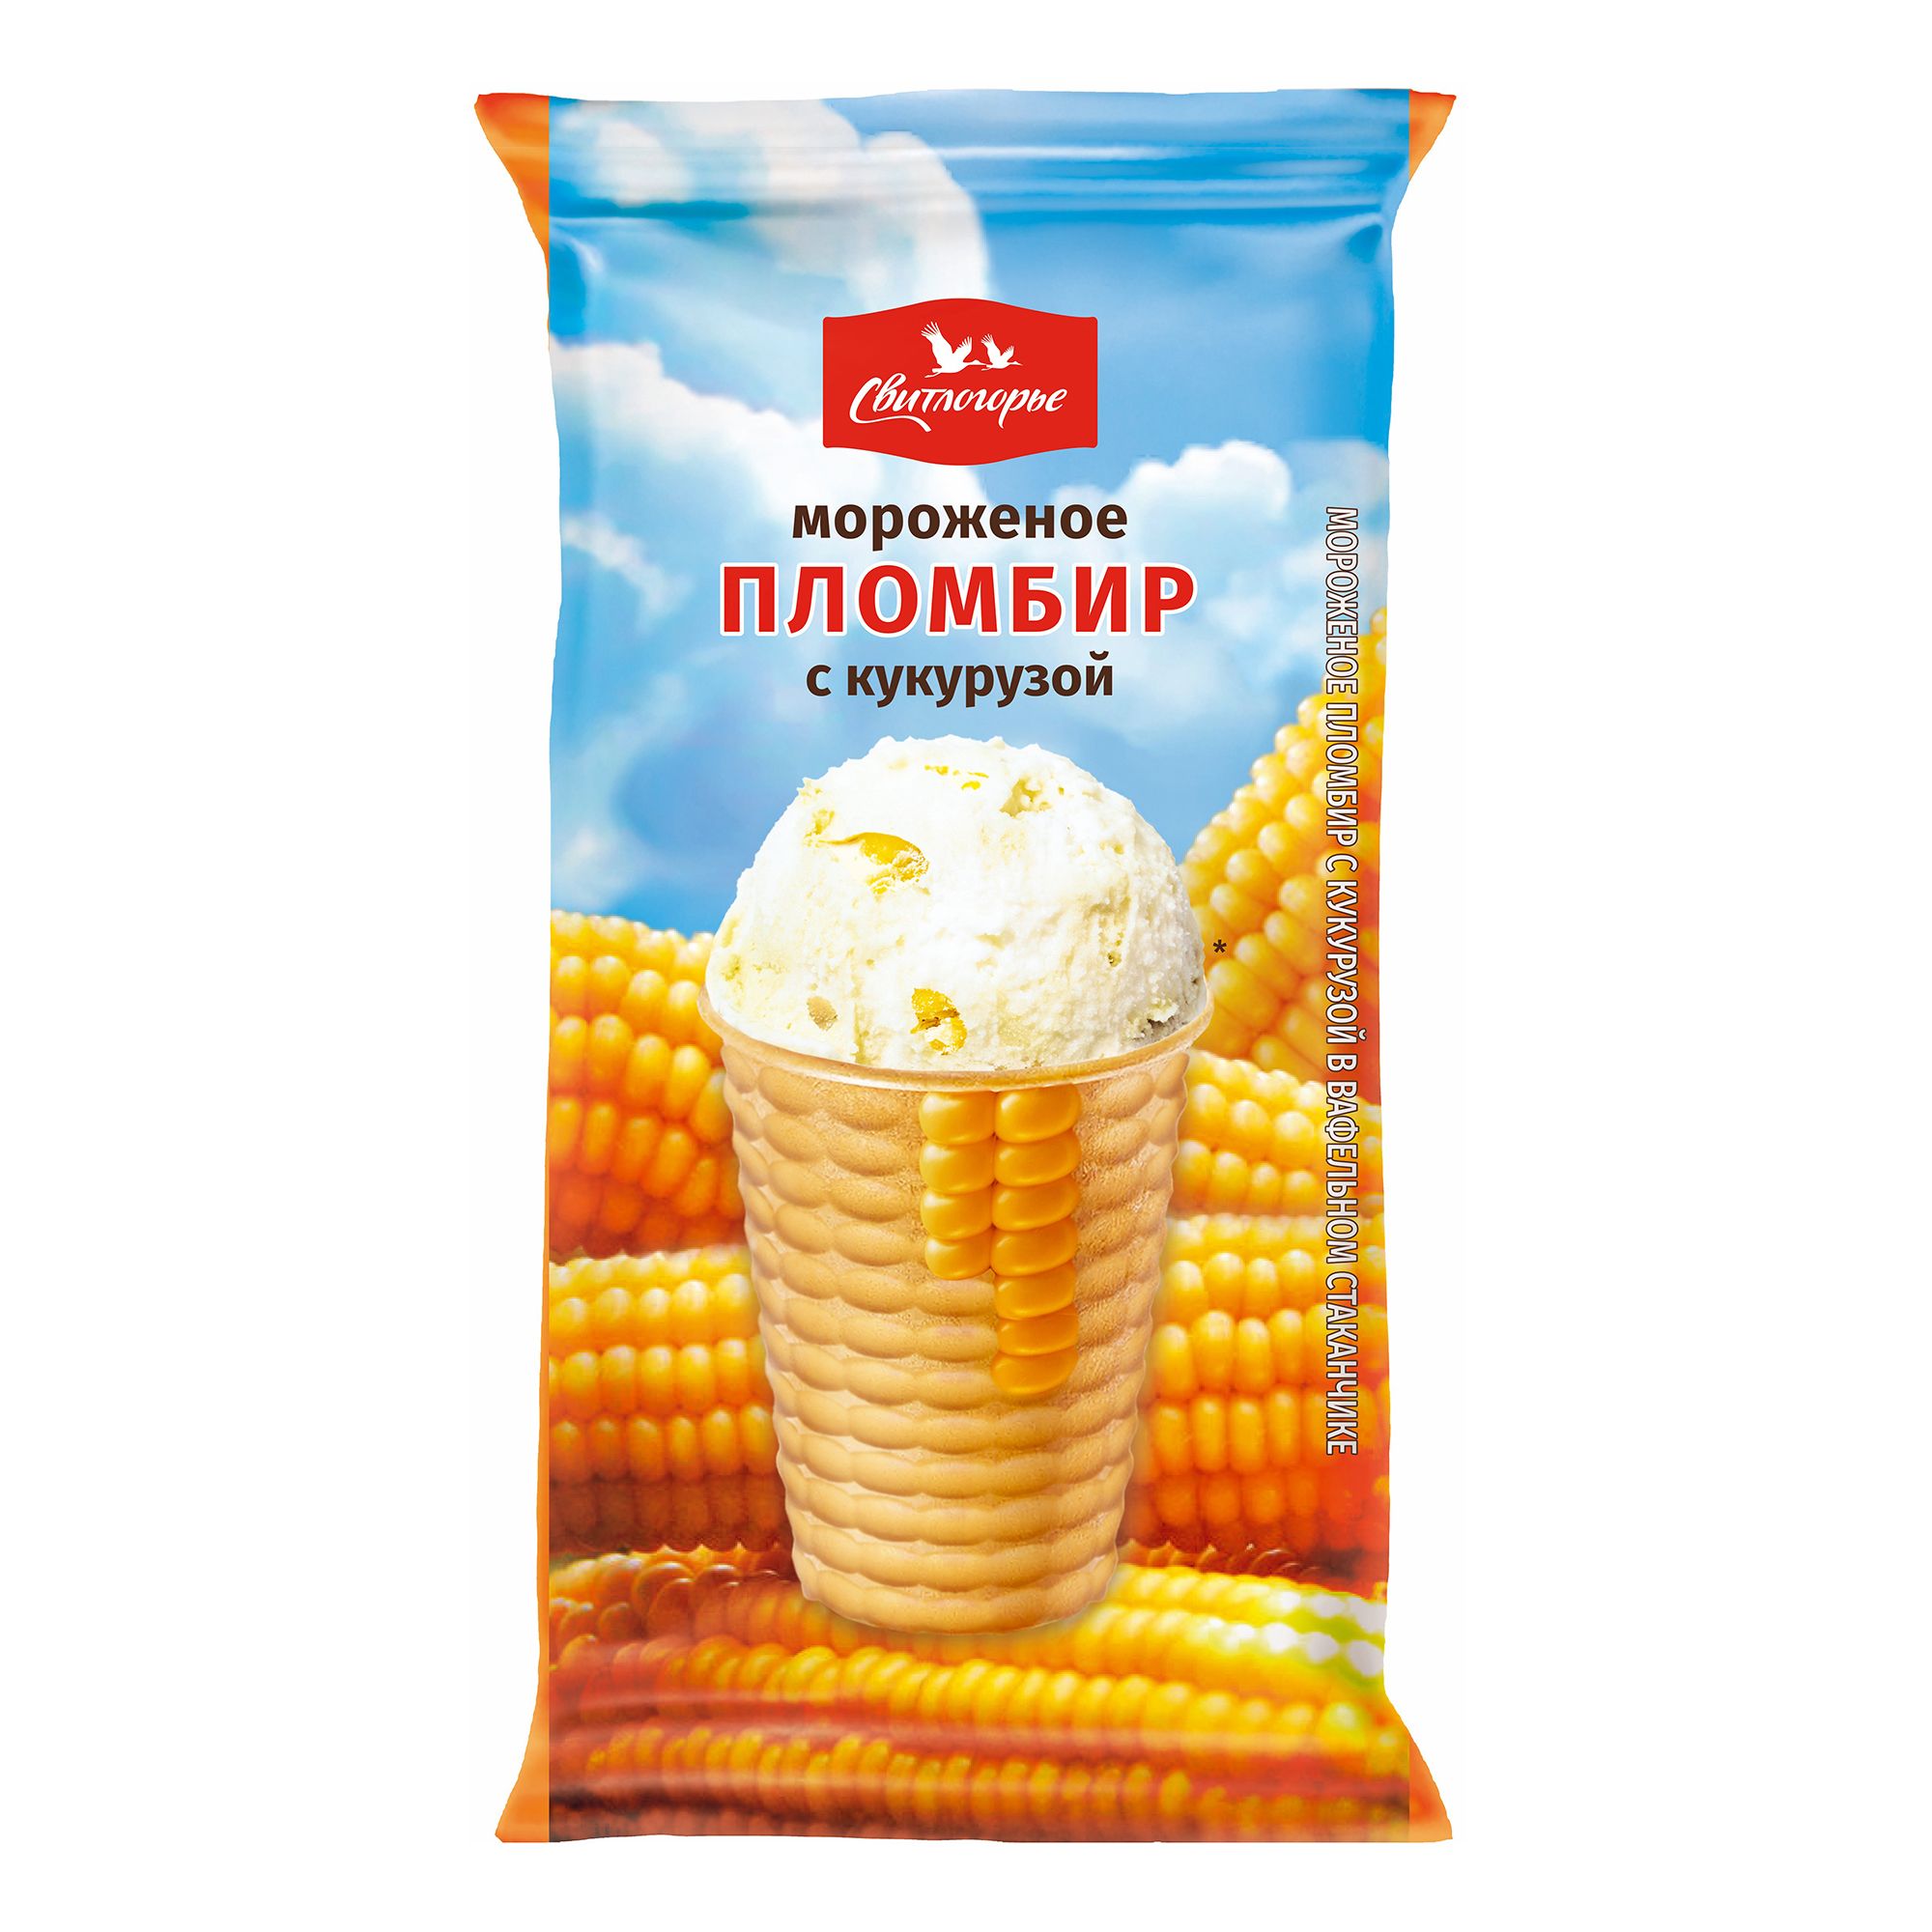 Мороженое пломбир Свитлогорье с кукурузой 105 г